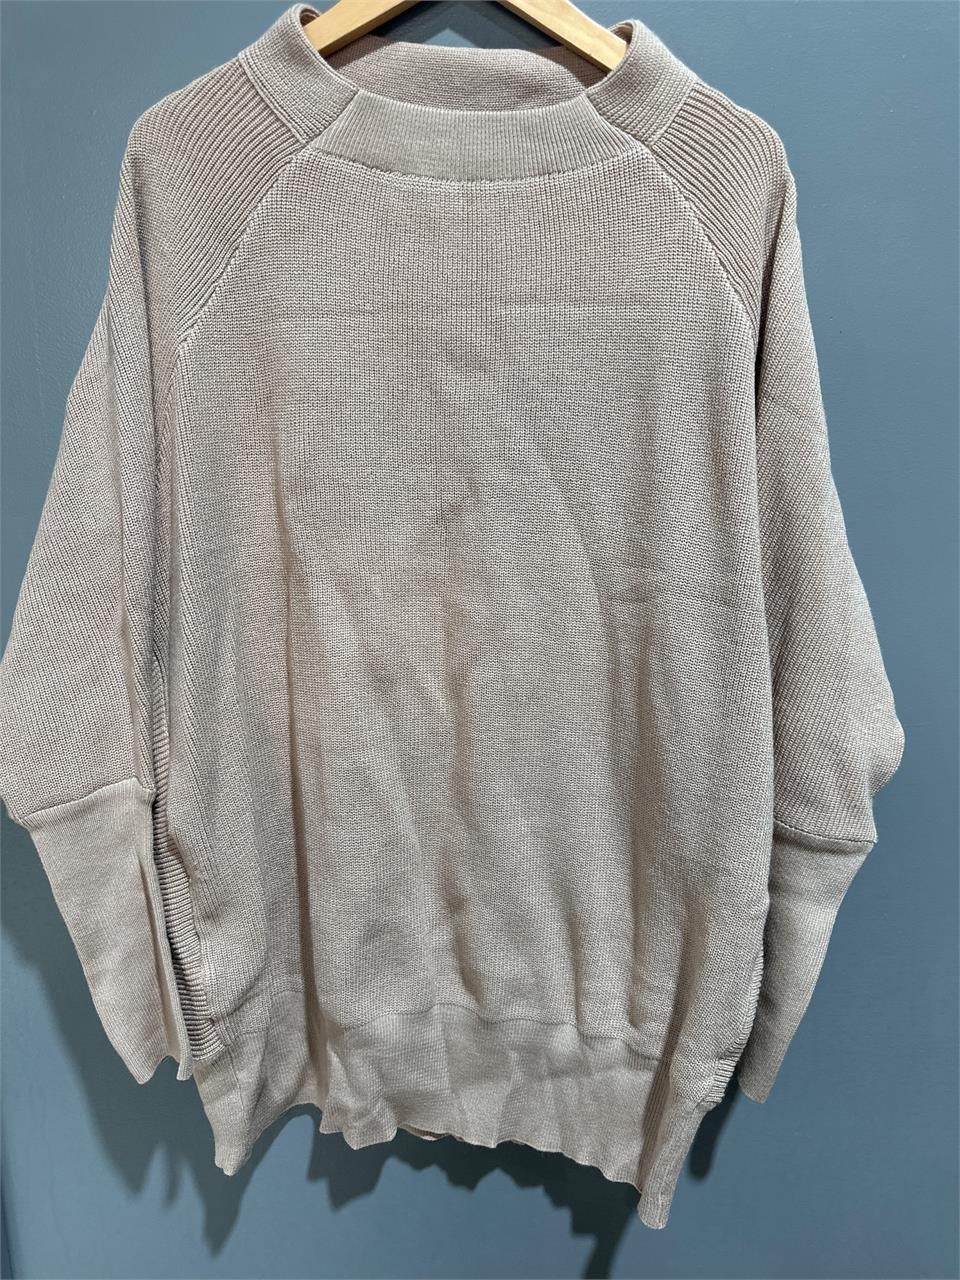 ($49) Women Oversized Batwing Long Sleeve sweater